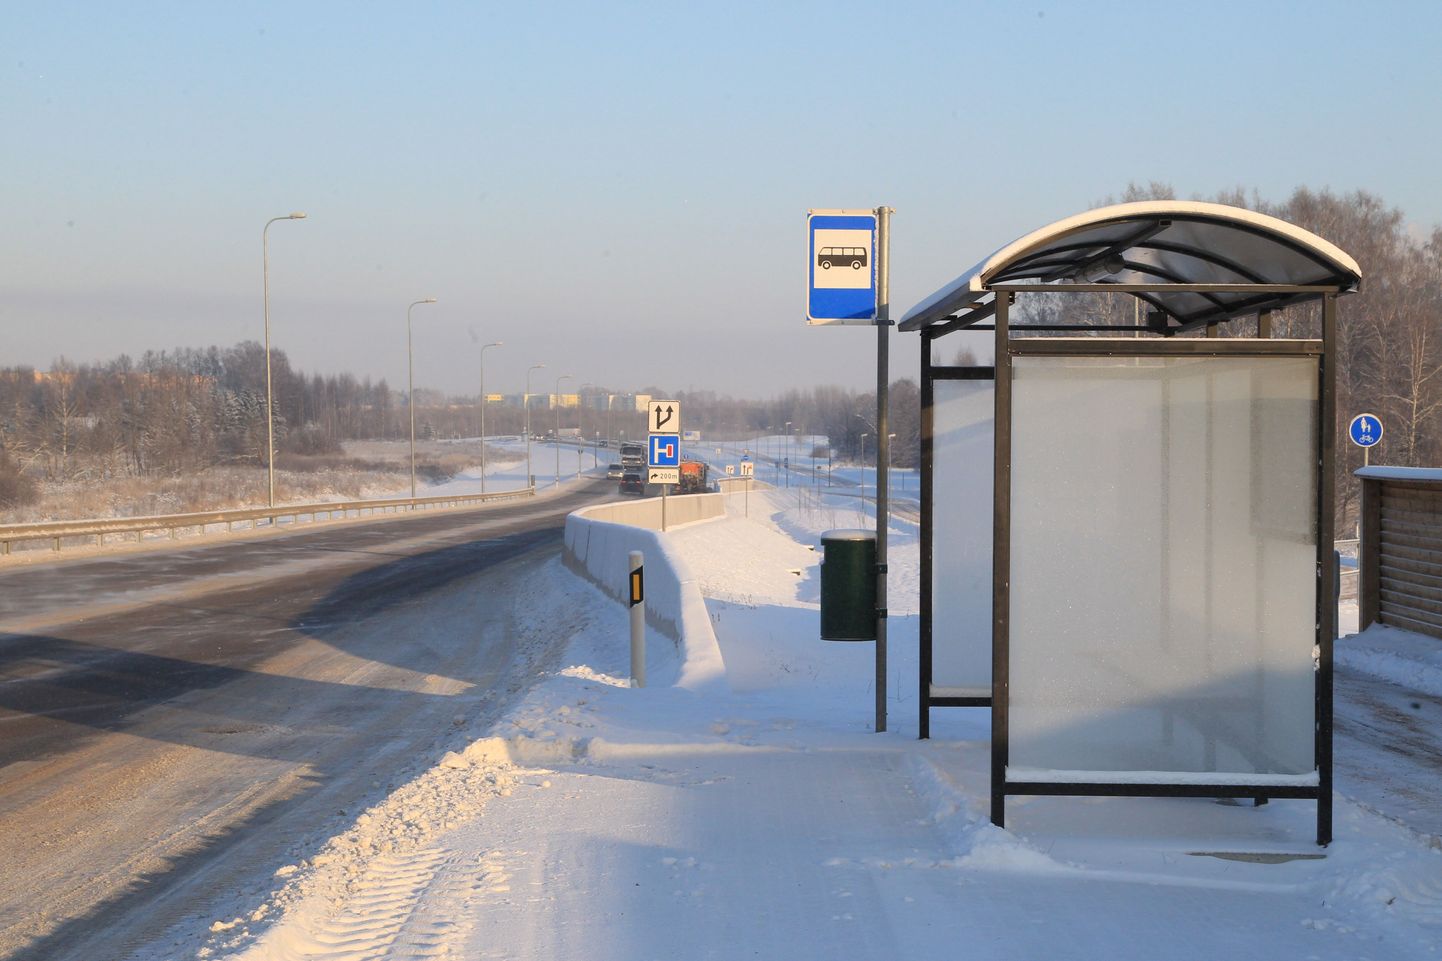 Sareta bussiga Tallinna reisida soovinud inimesed olid sunnitud pärast sõiduvahendi katkiminekut ostma uue pileti.